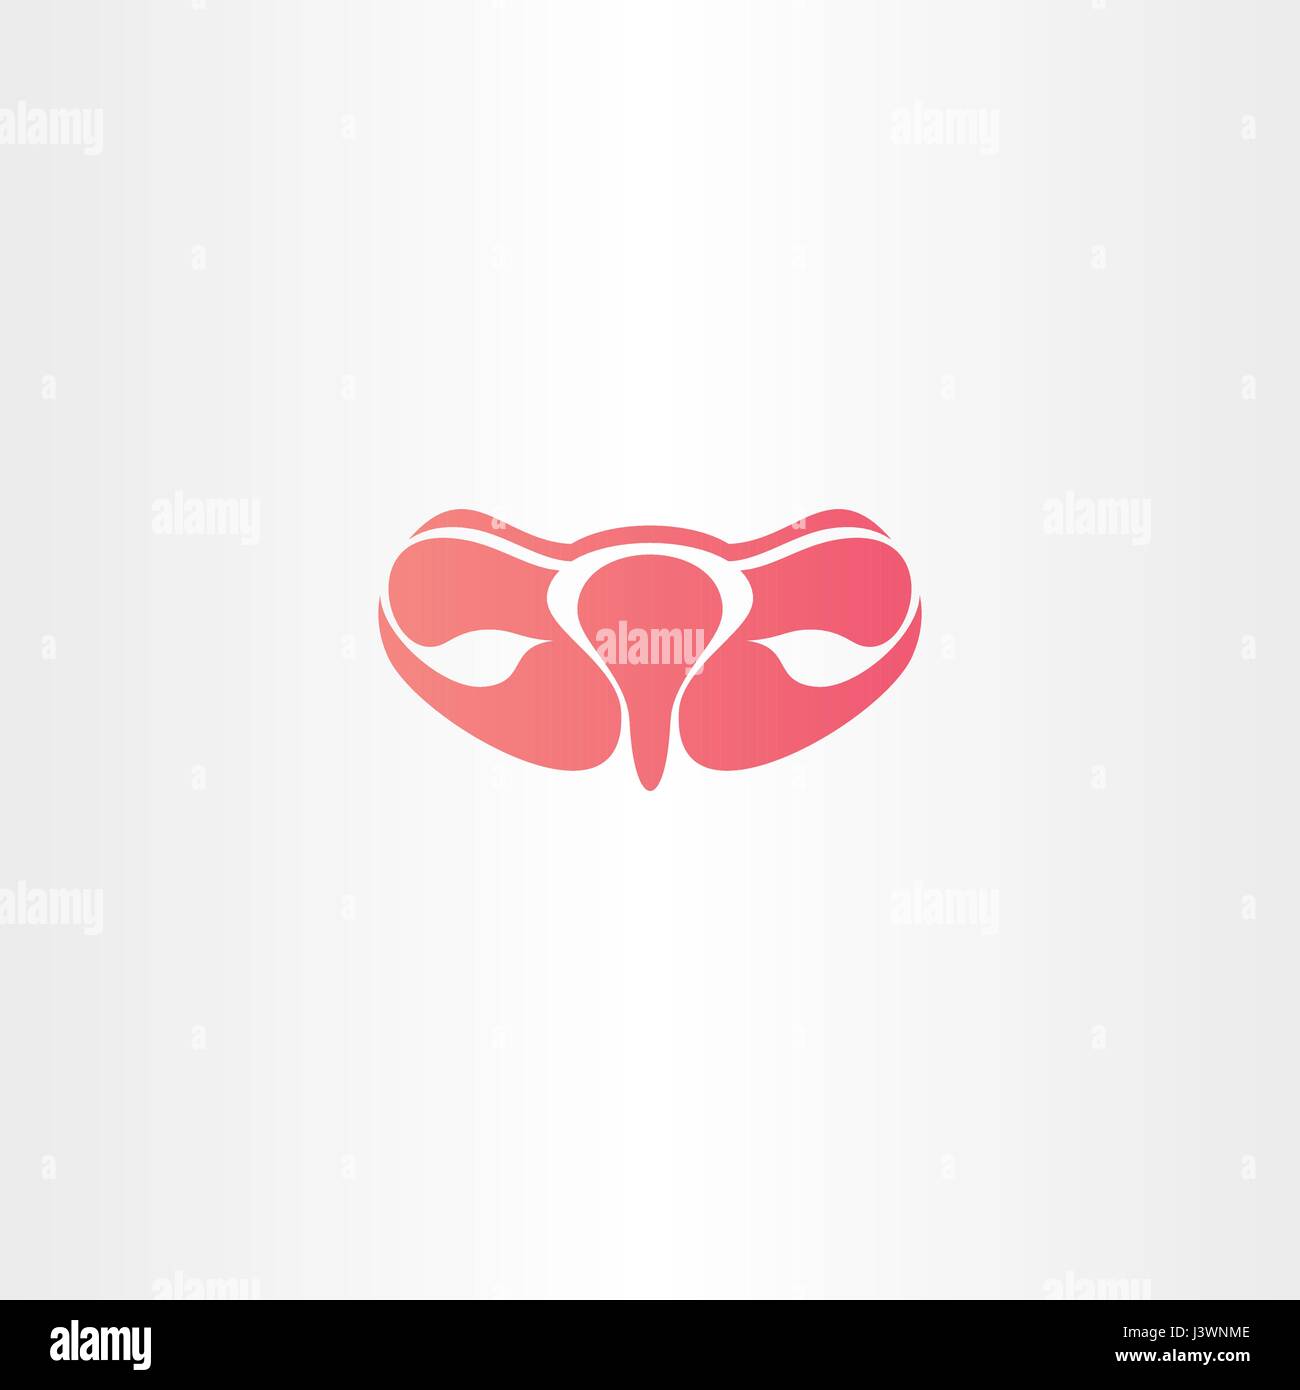 ovary icon logo vector symbol design Stock Vector